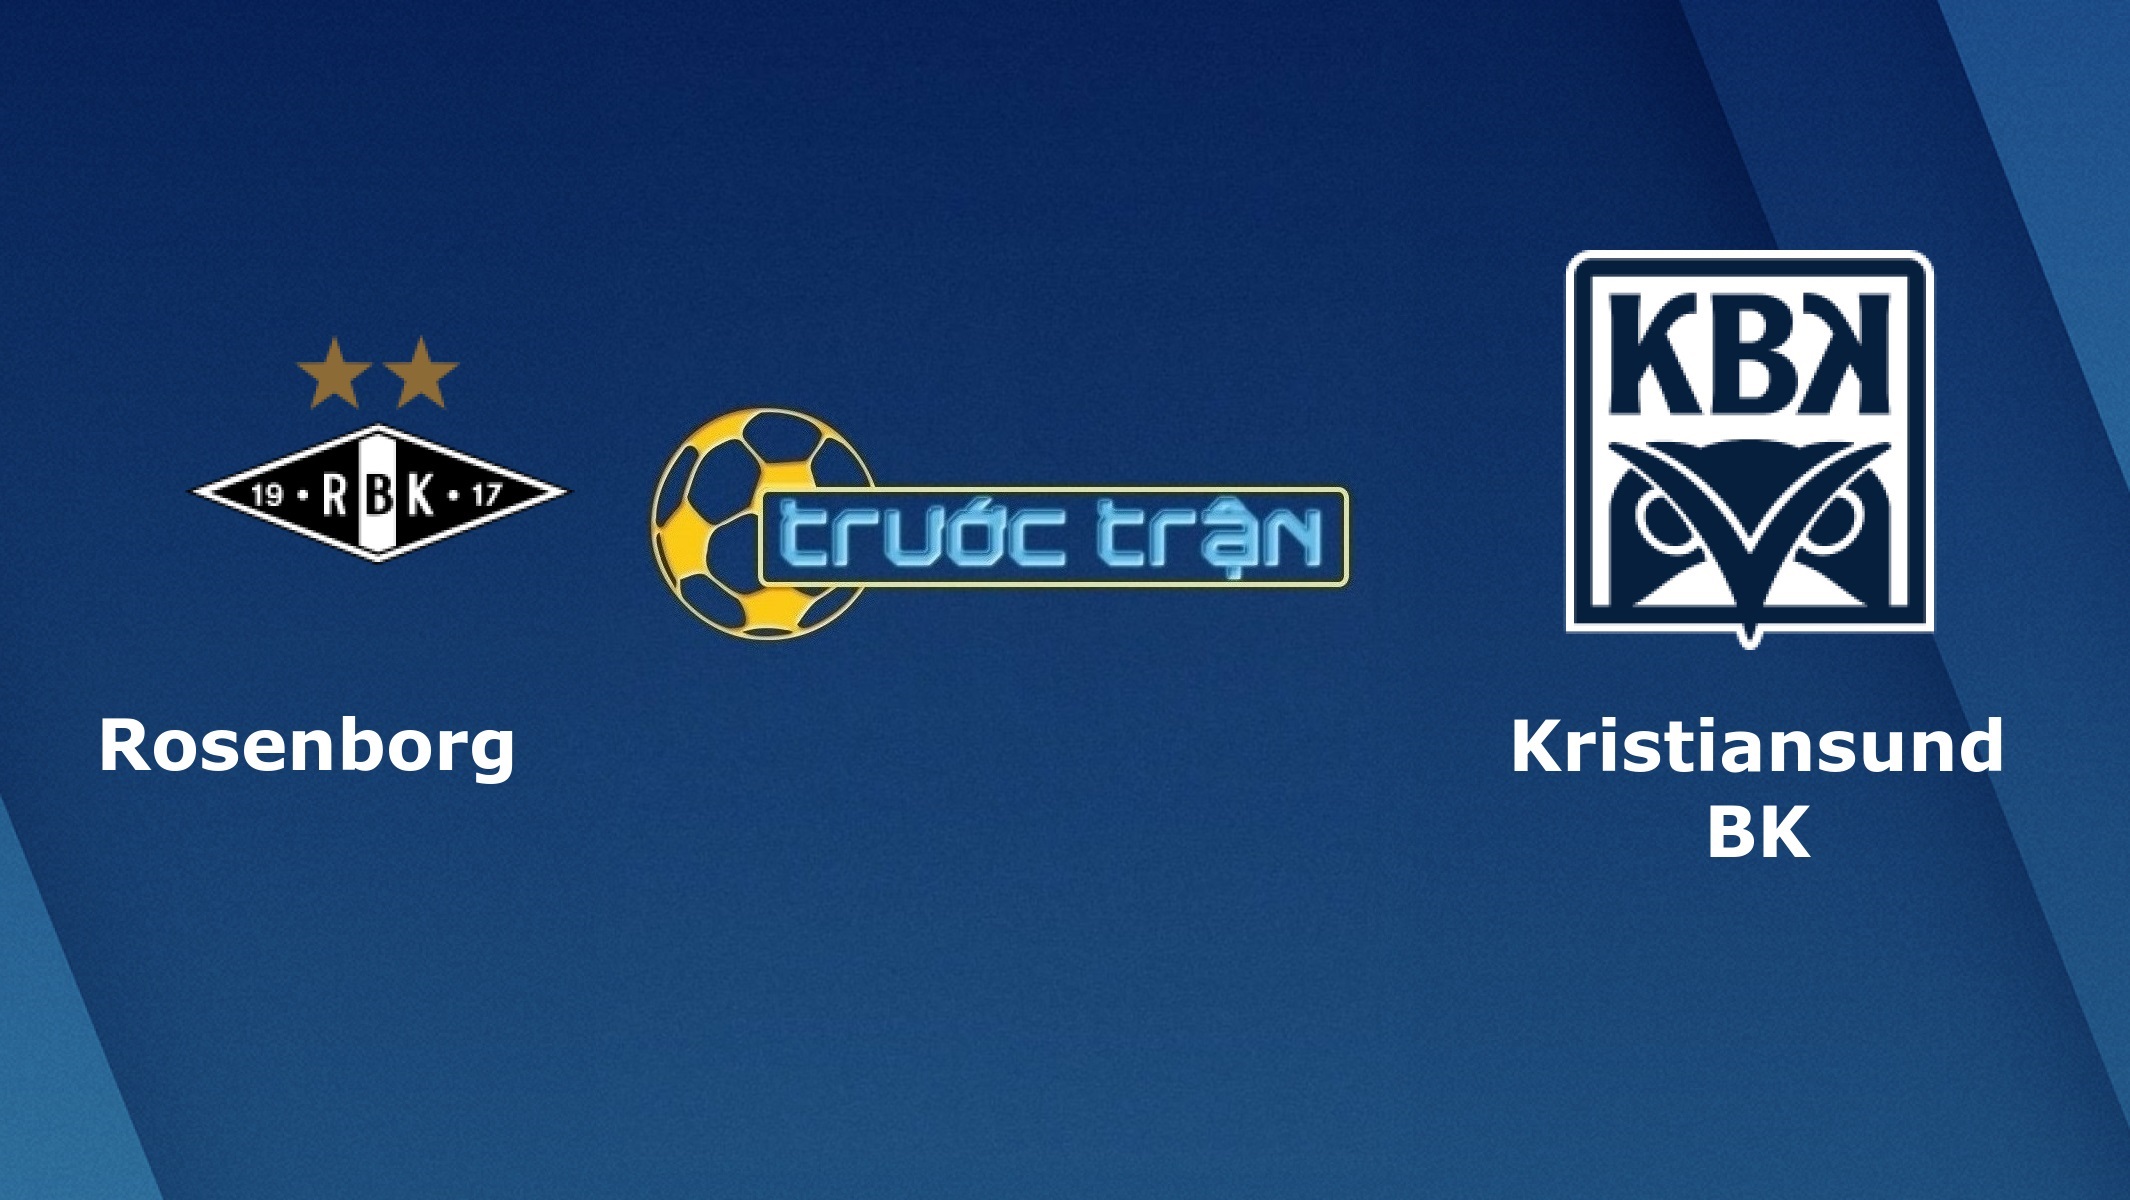 Rosenborg vs Kristiansund BK – Tip kèo bóng đá hôm nay – 16/06